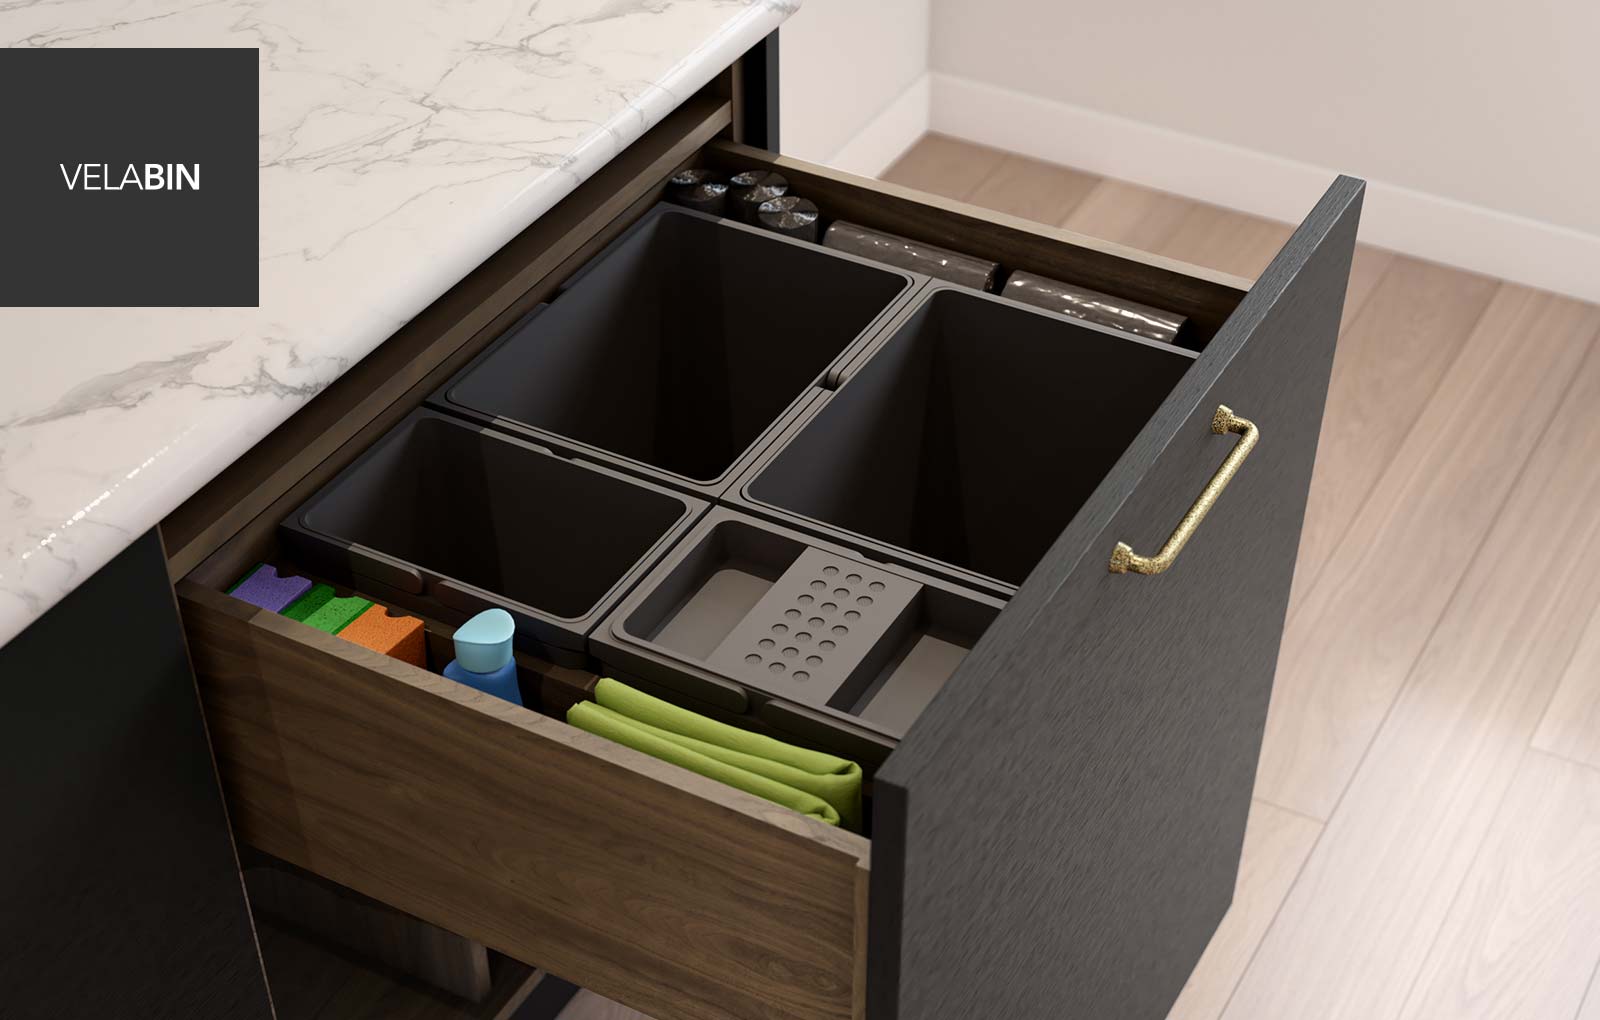 VelaBin Integrated kitchen bin